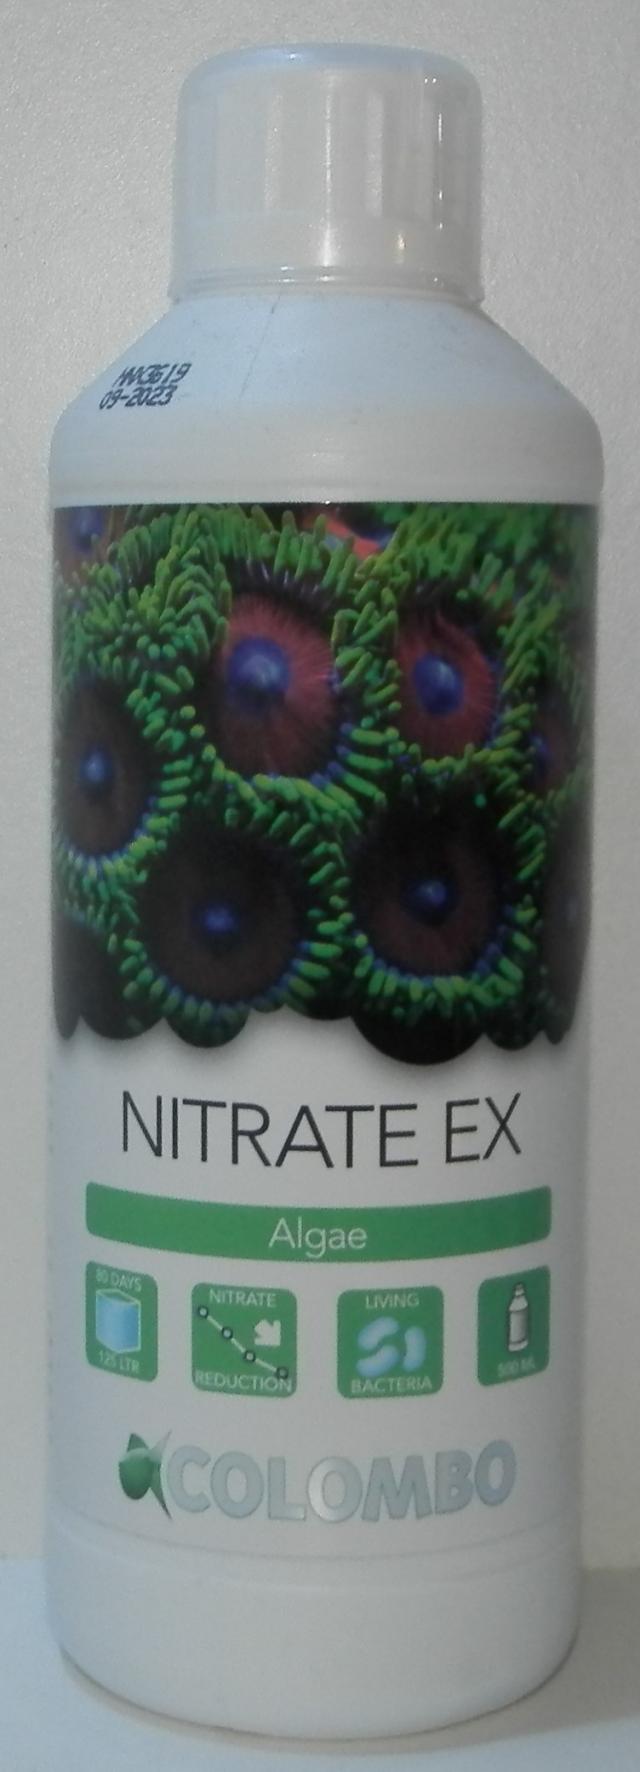 nitrate ex 500ml